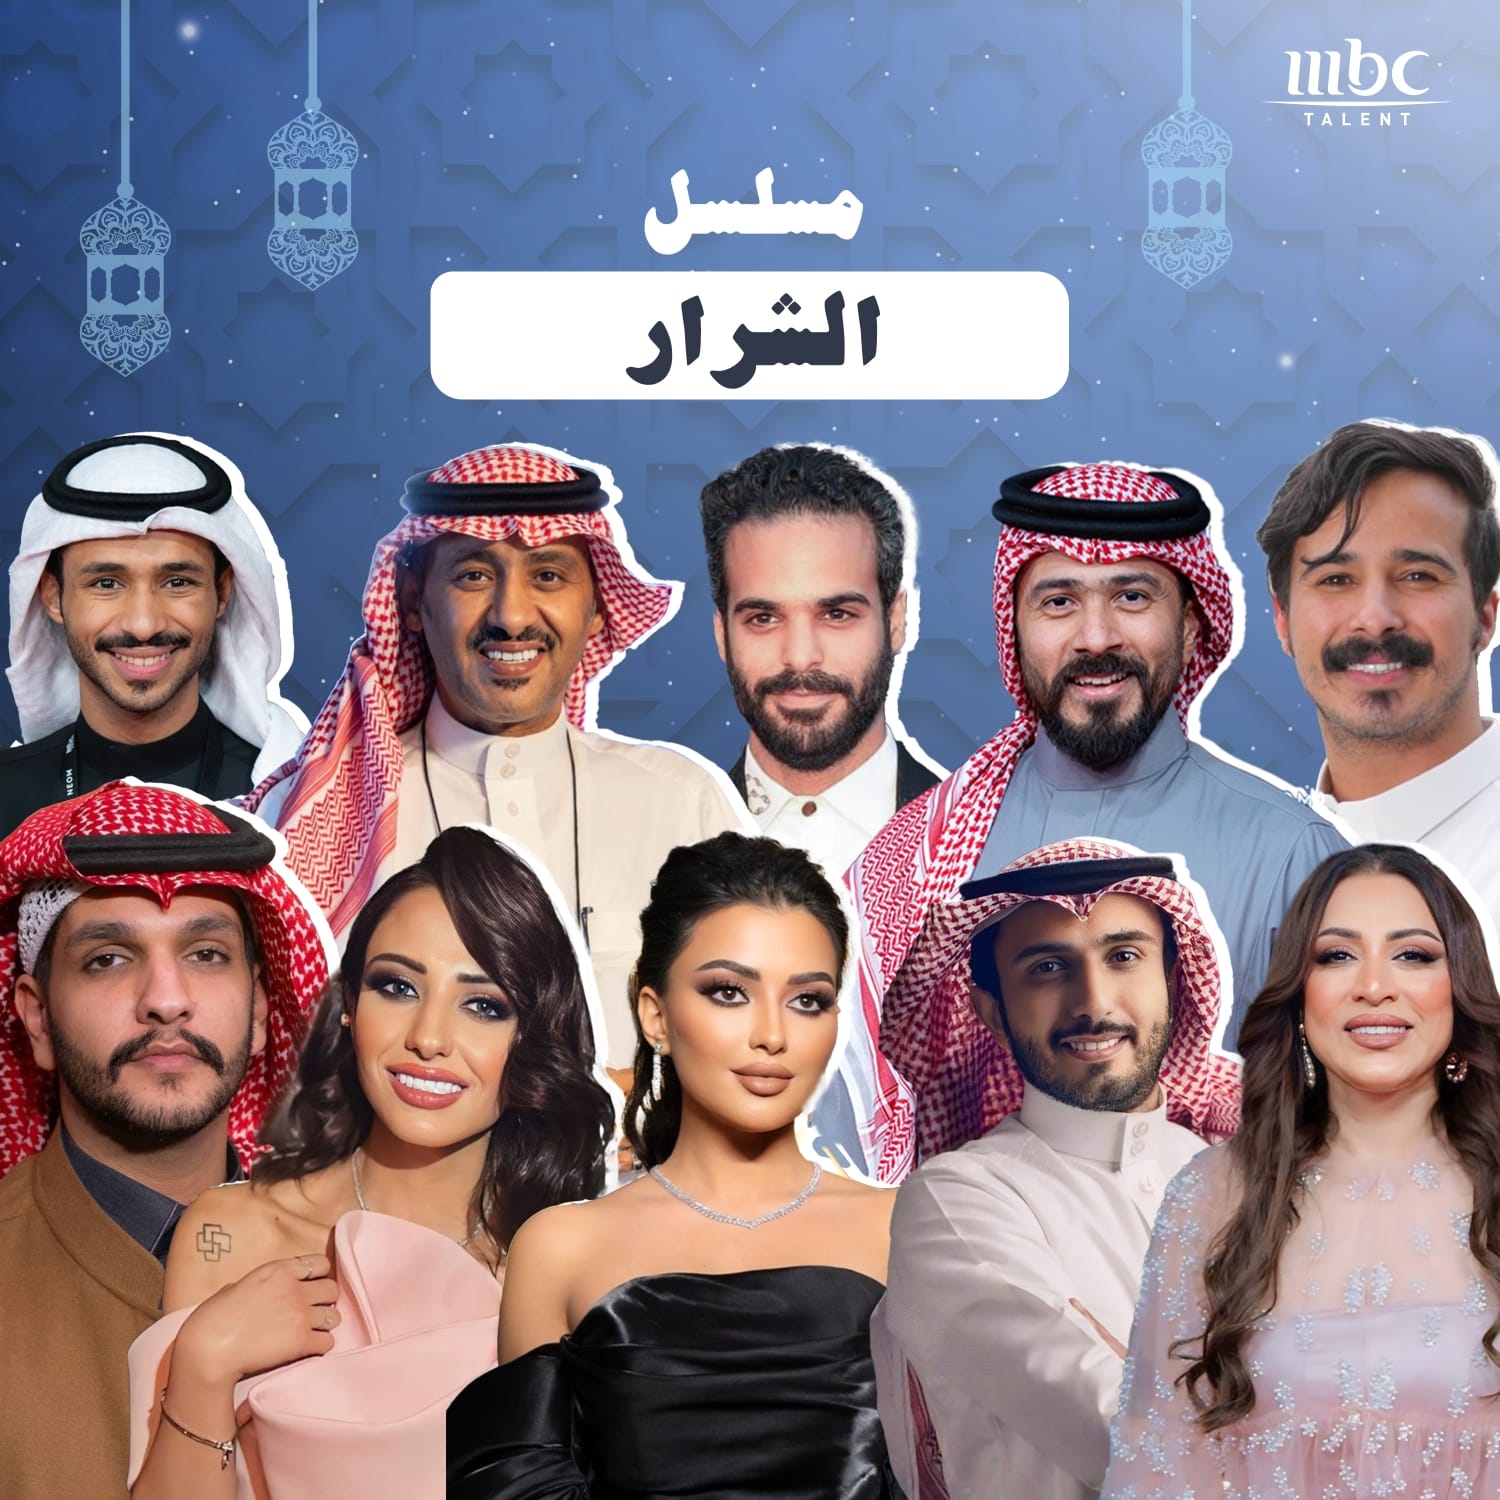 نجوم Mbc Talent يثرون الموسم الرمضاني بحضورهم في المسلسلات الخليجية